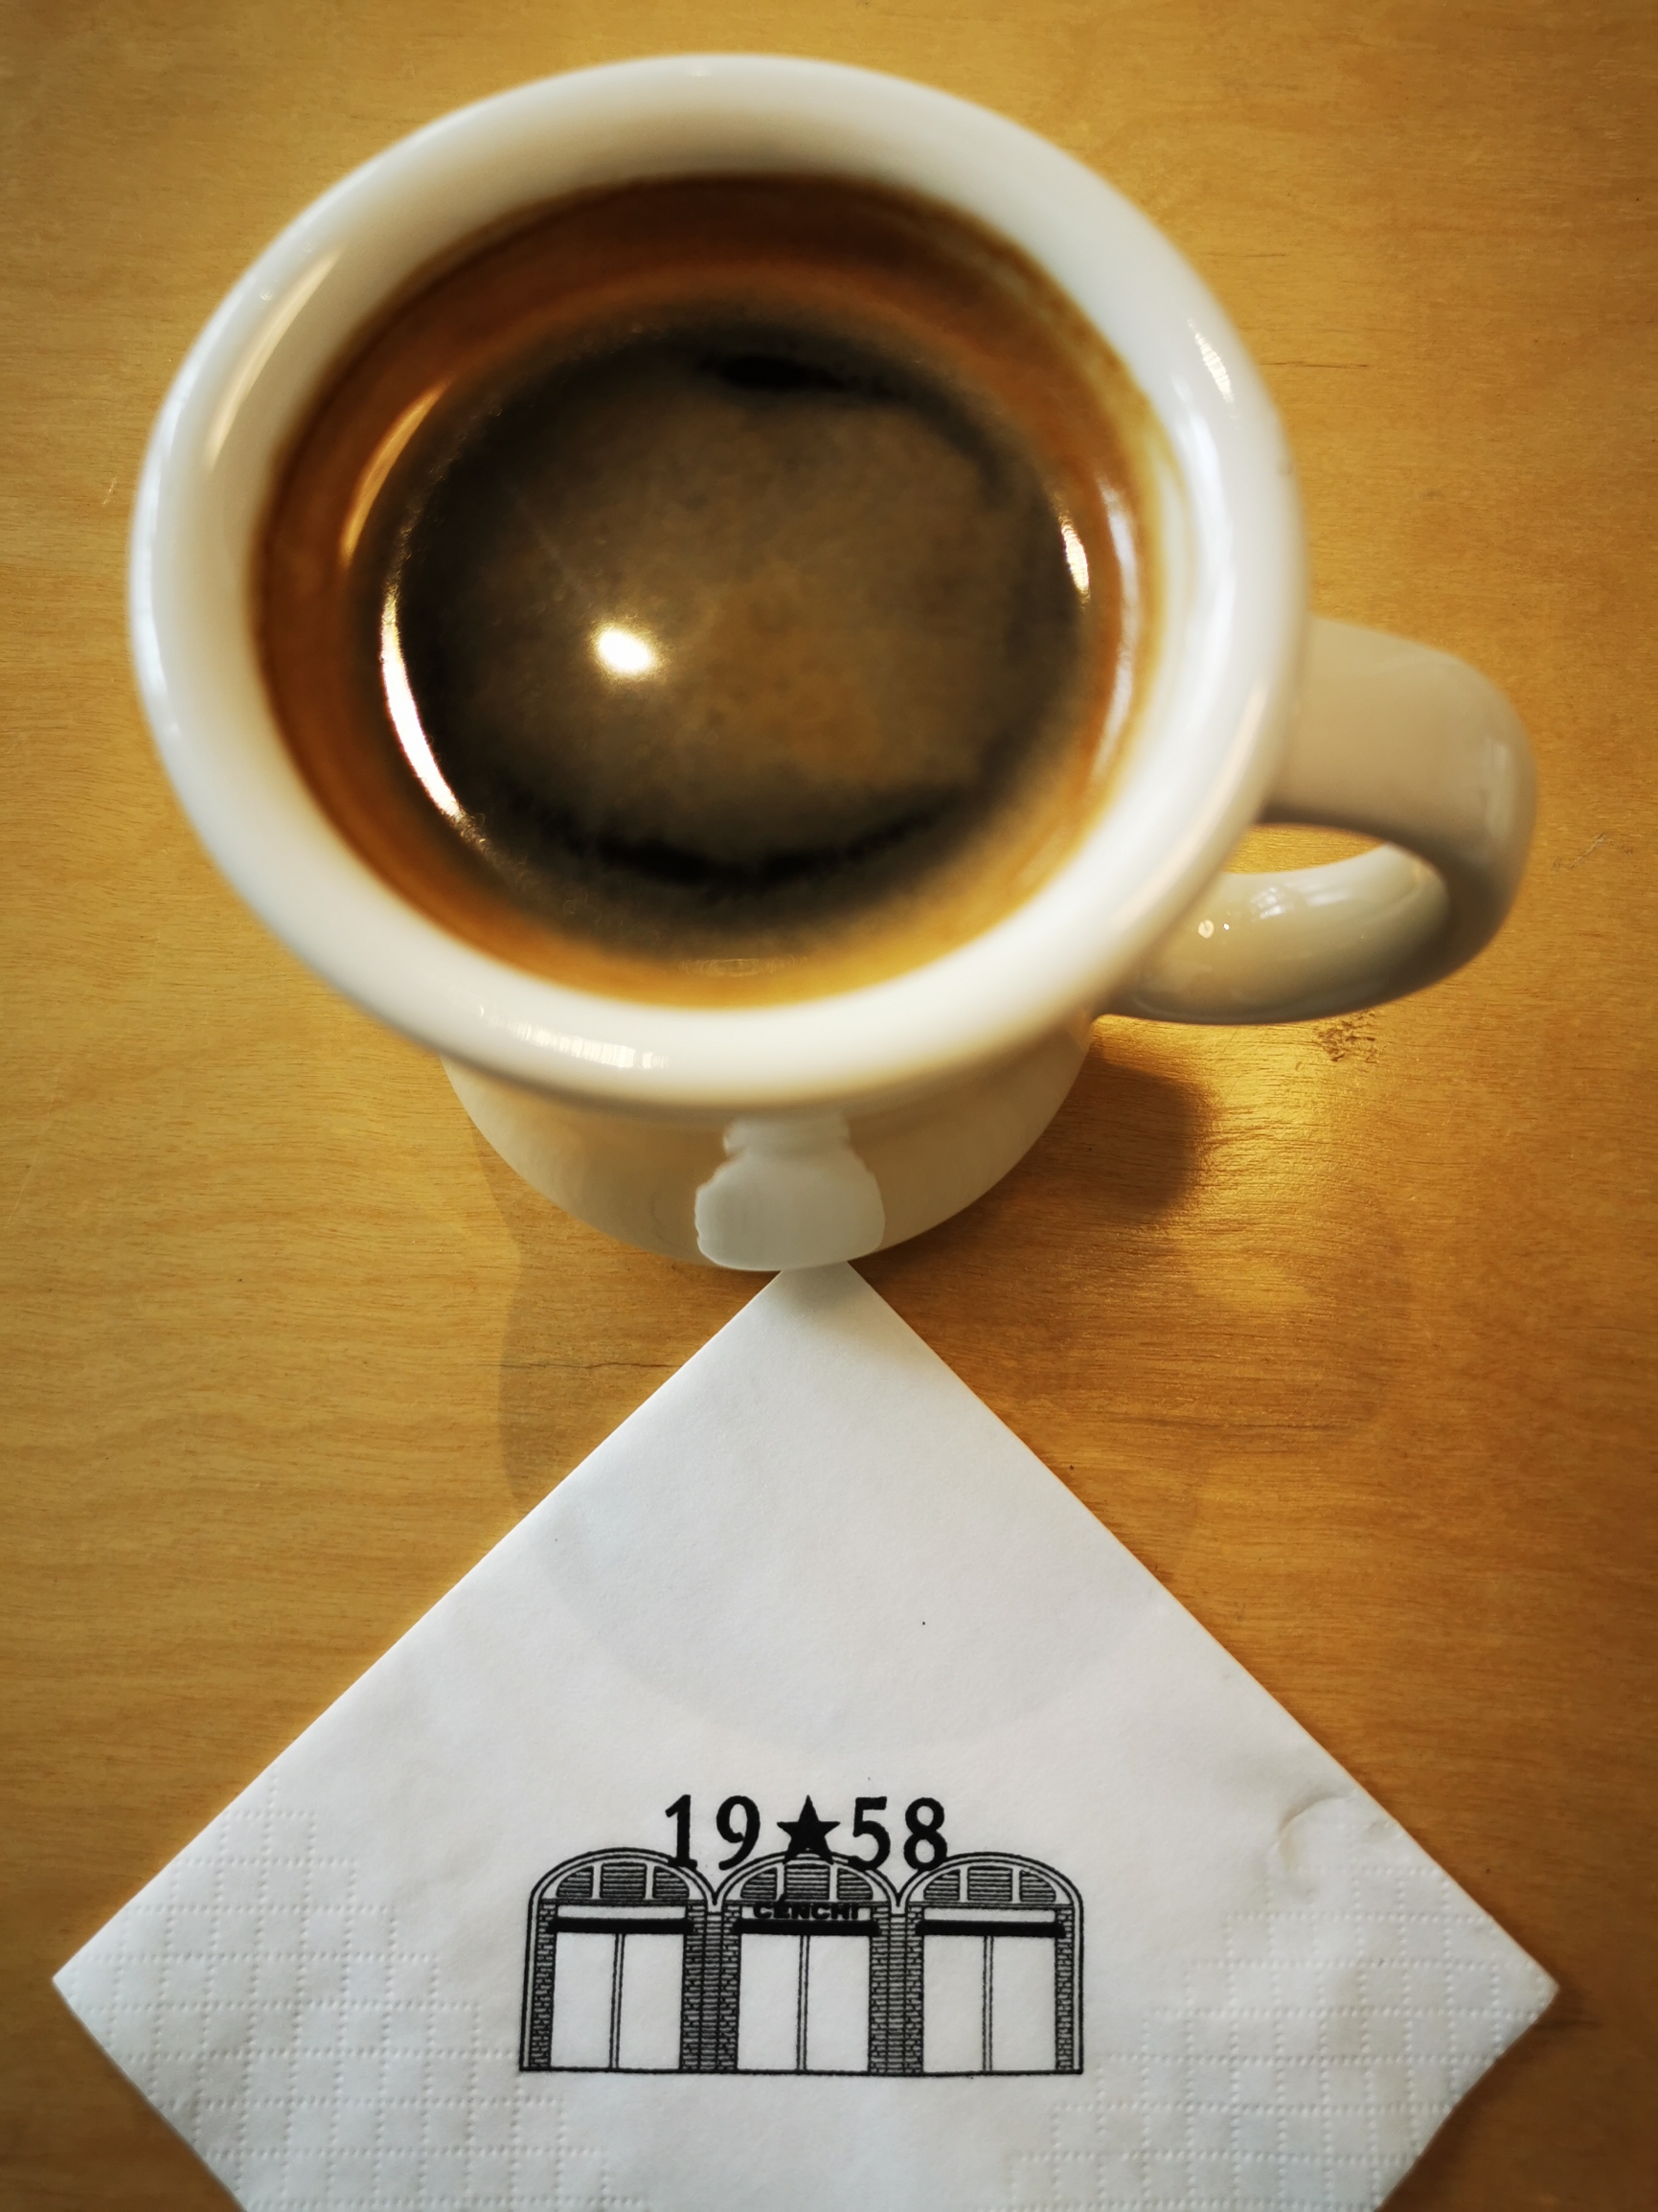 汵奇咖啡是在一片工业园里，有点海淀798的意思。美式味道还行。